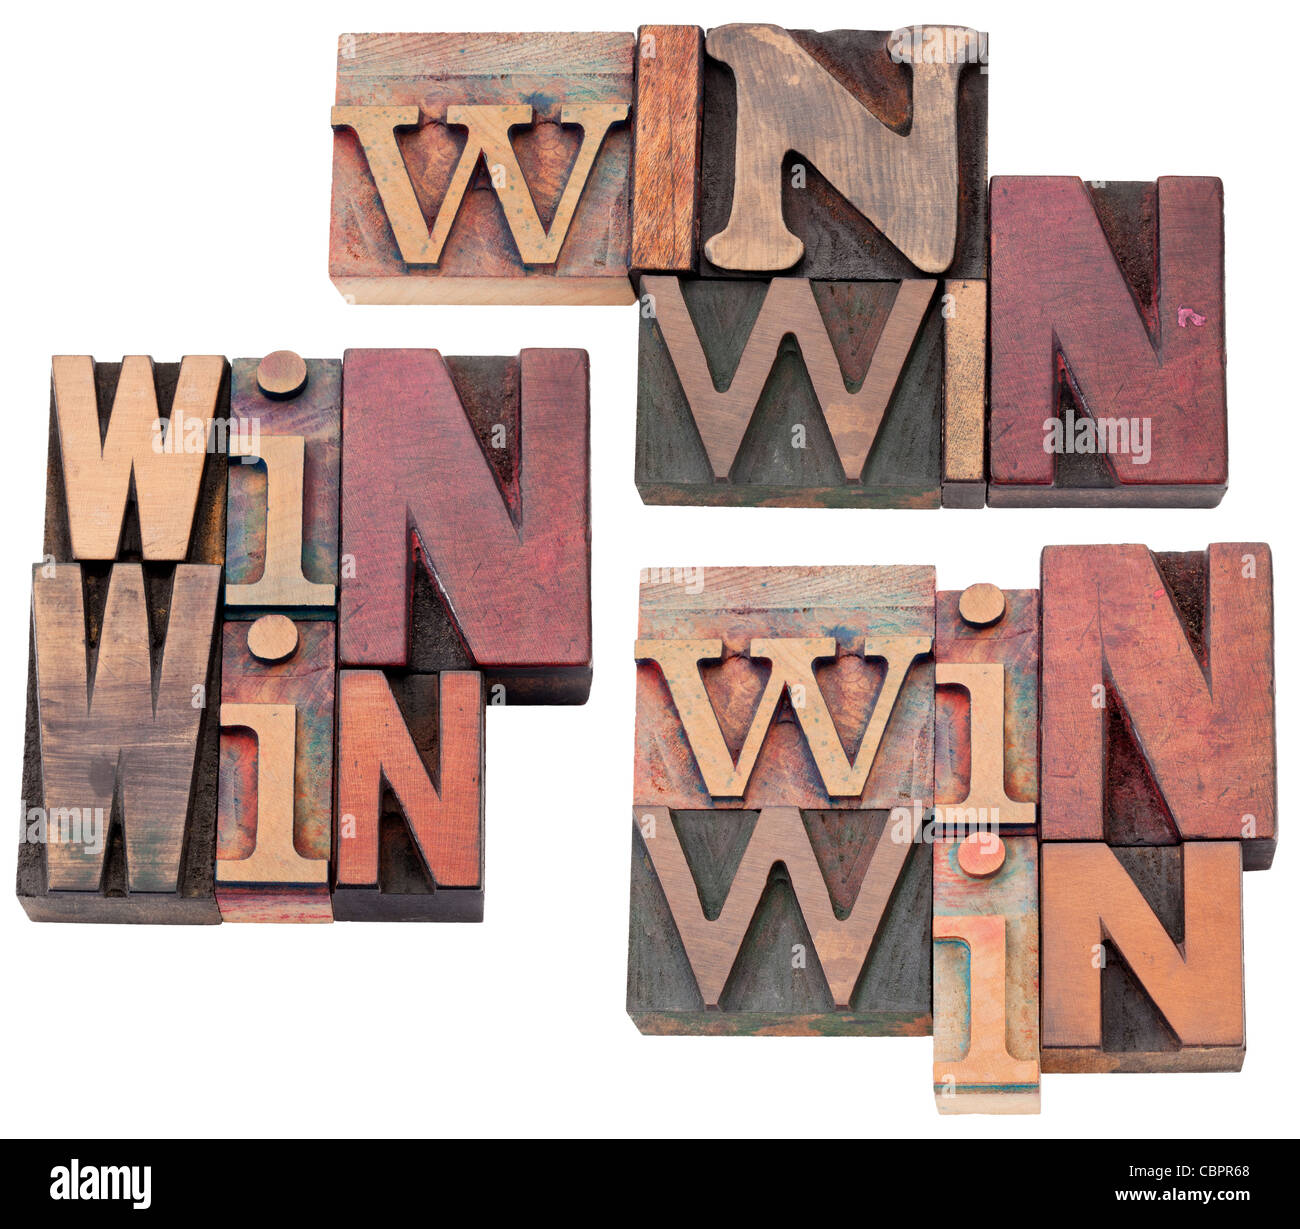 Estrategia de ganar-ganar, la negociación o la resolución de conflictos concepto - texto aislado en vintage tipografía bloques de madera Foto de stock